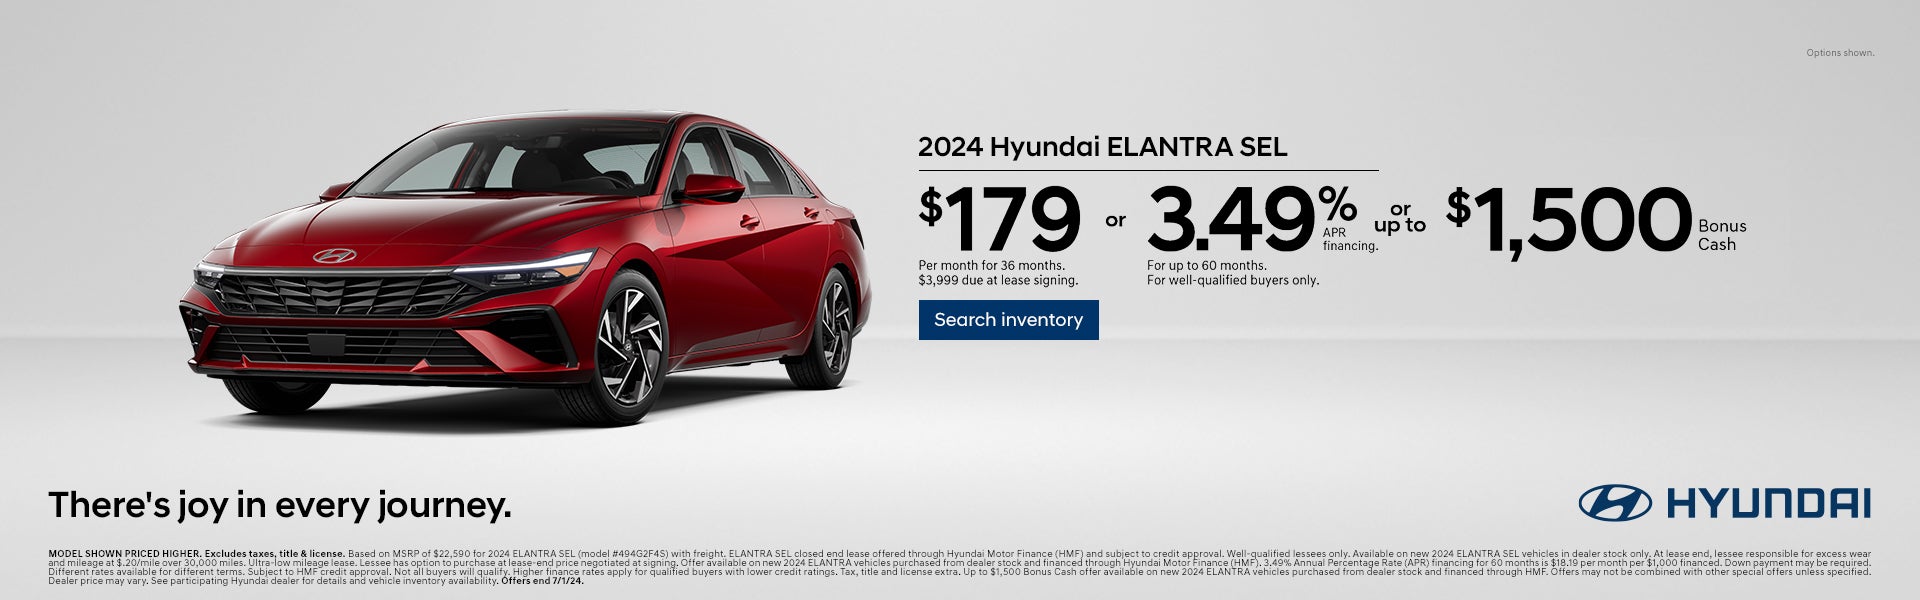 2024 Hyundai Elantra SEL offer